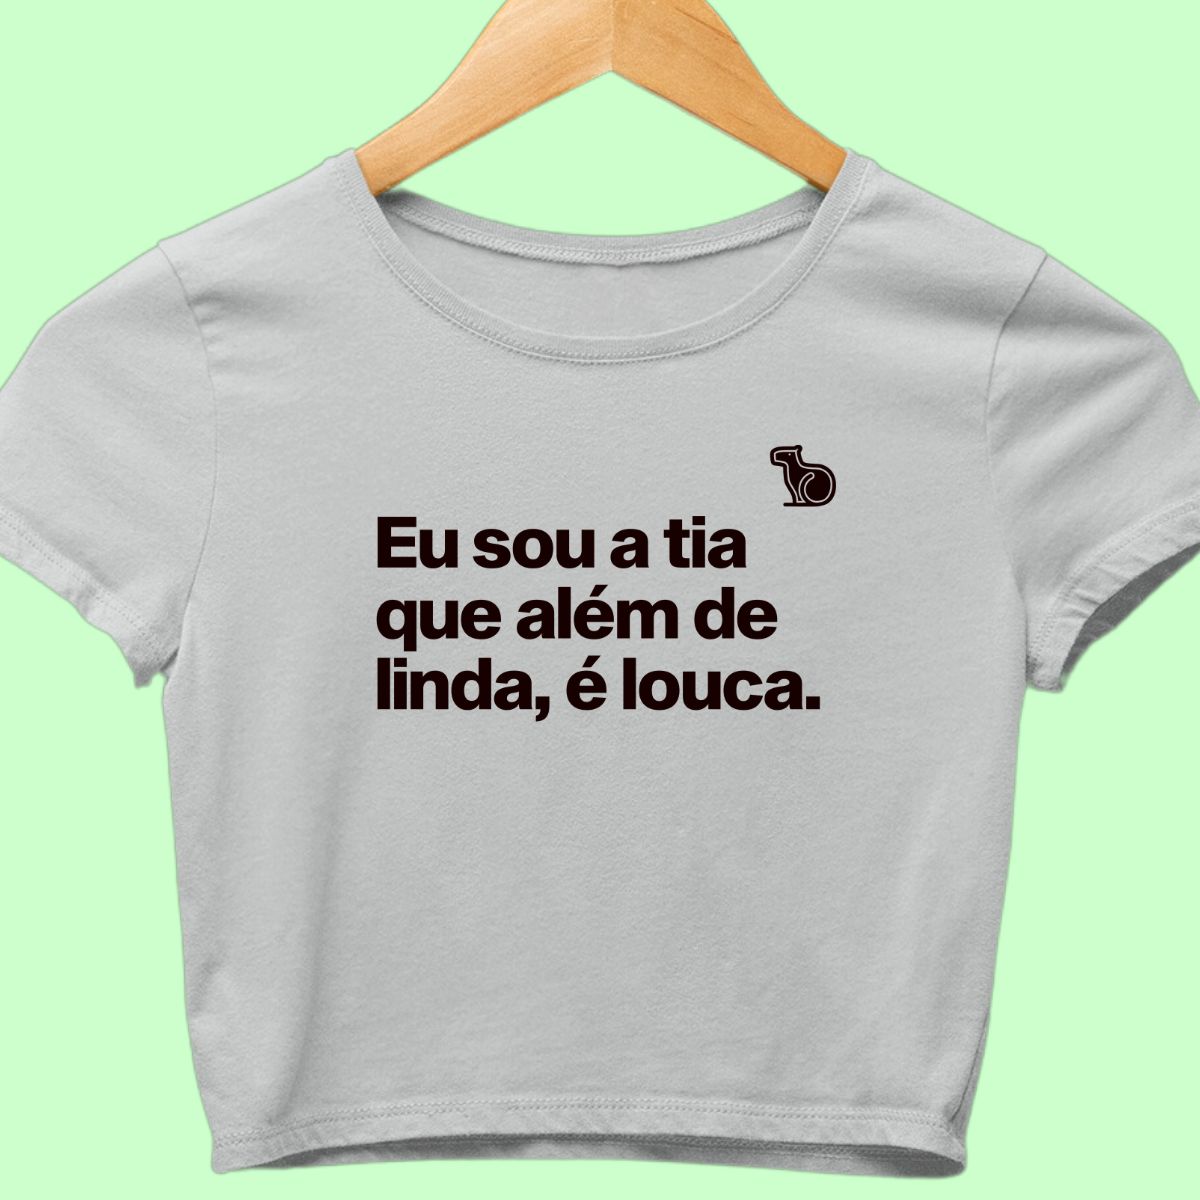 Camiseta cropped com a frase "Sou a tia que além de linda, é louca."  cinza.